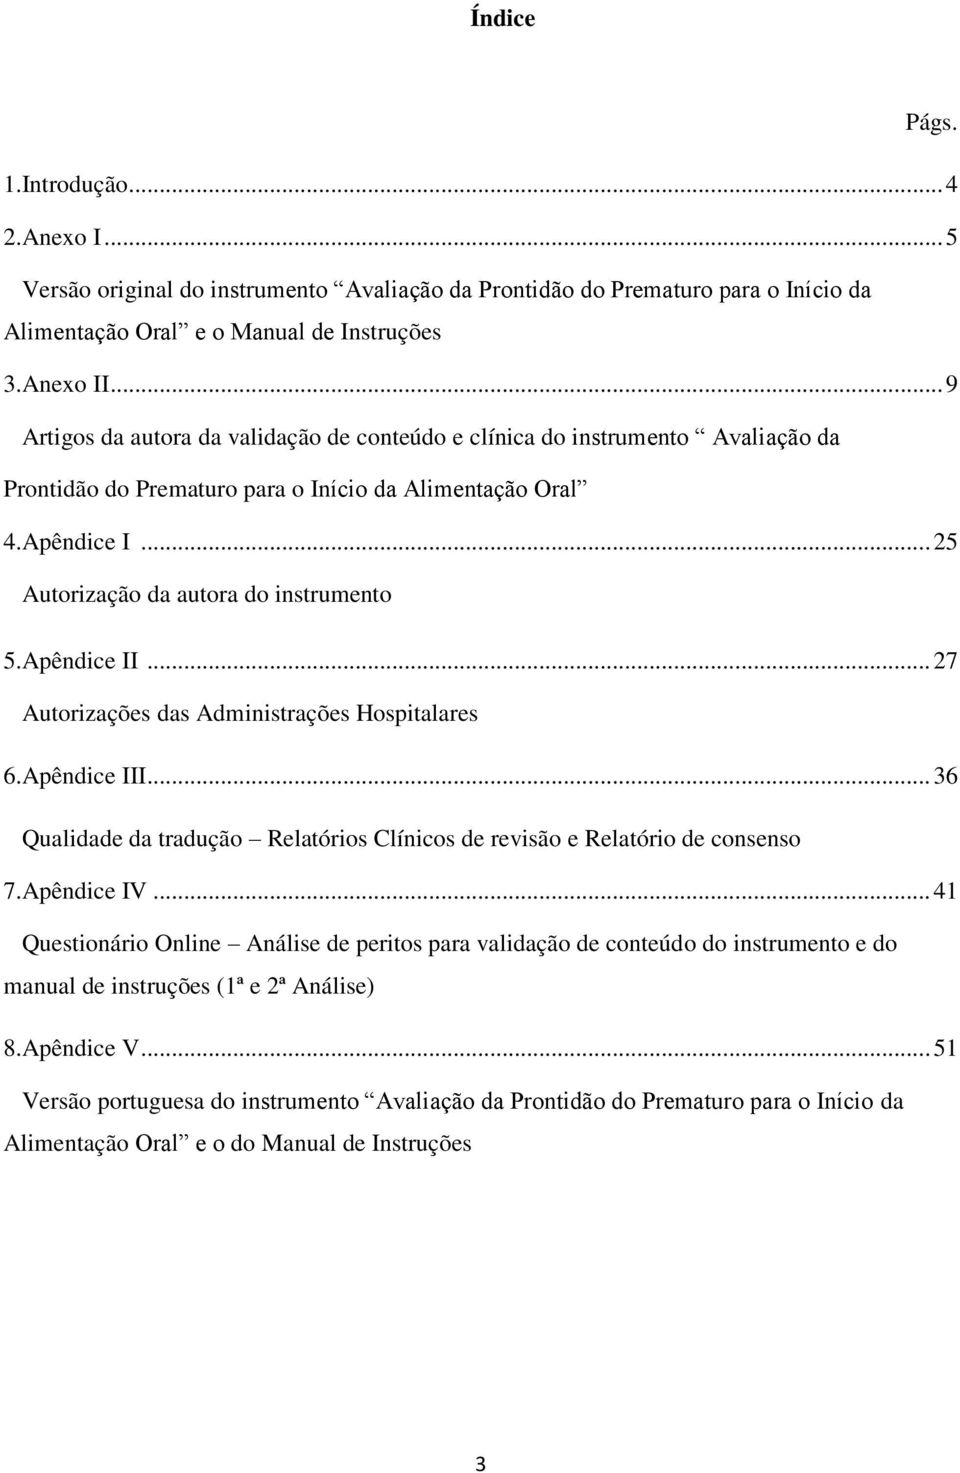 Apêndice II... 27 Autorizações das Administrações Hospitalares 6.Apêndice III... 36 Qualidade da tradução Relatórios Clínicos de revisão e Relatório de consenso 7.Apêndice IV.